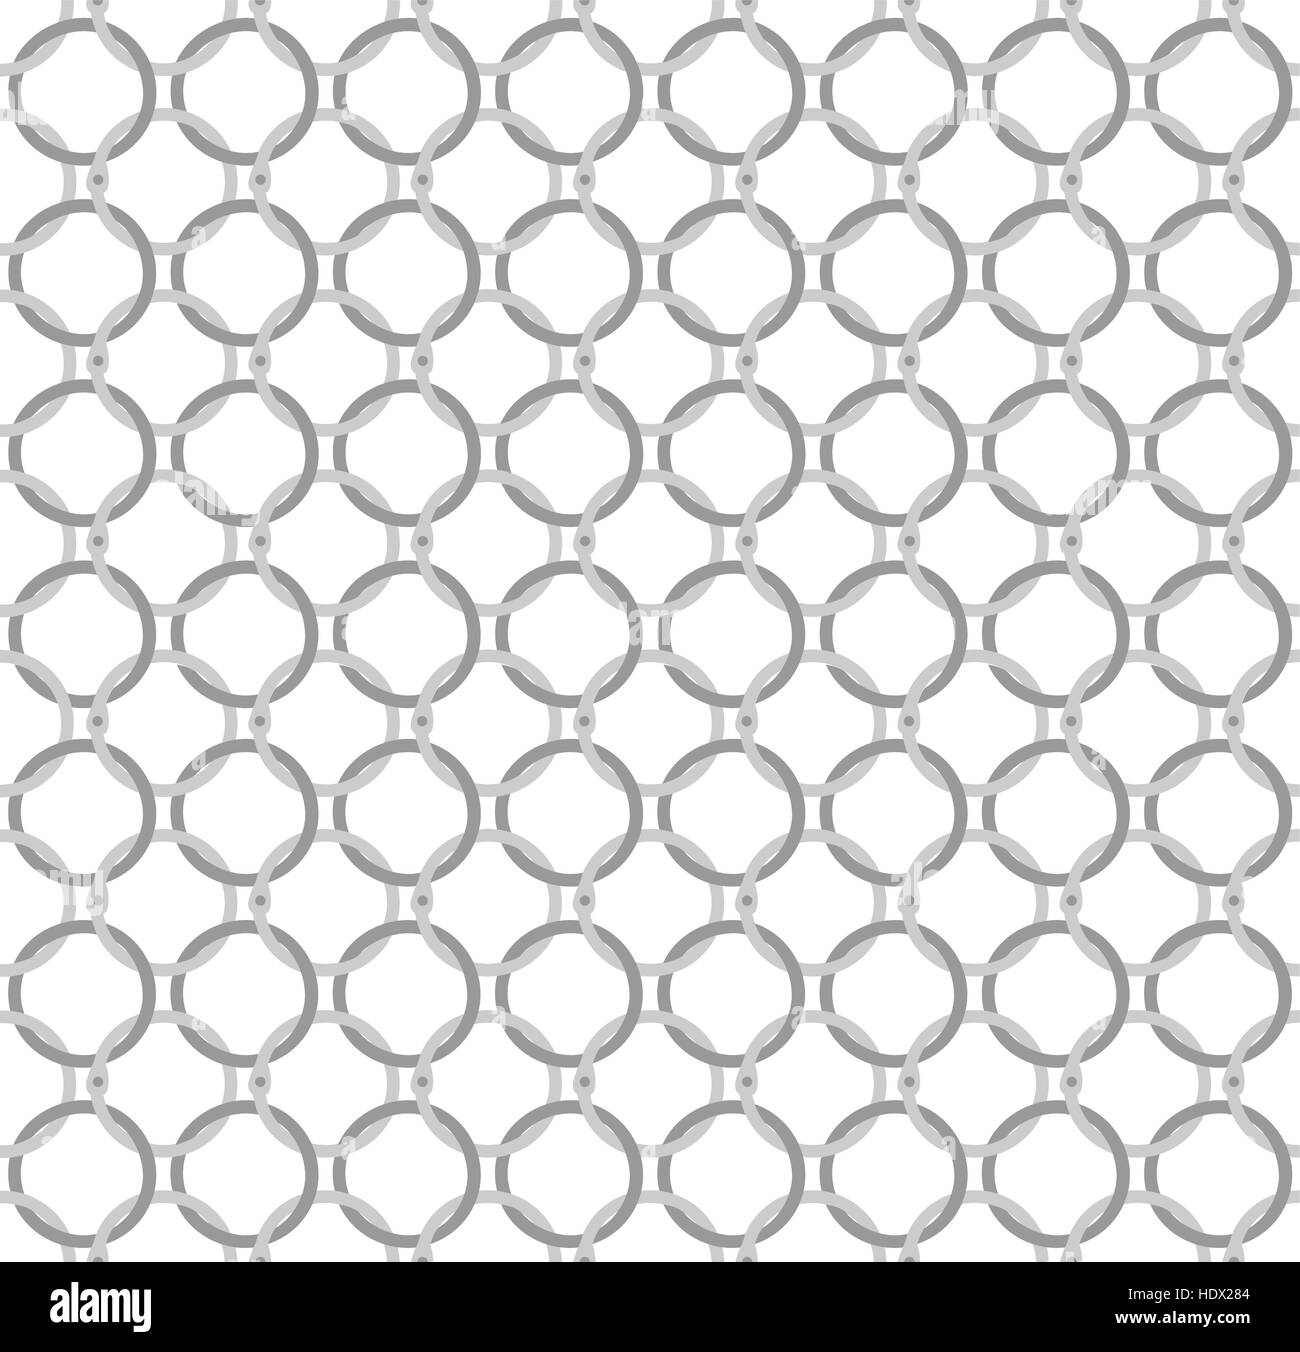 Vettore di Seamless pattern acciaio ritorto anelli come mail a catena Illustrazione Vettoriale